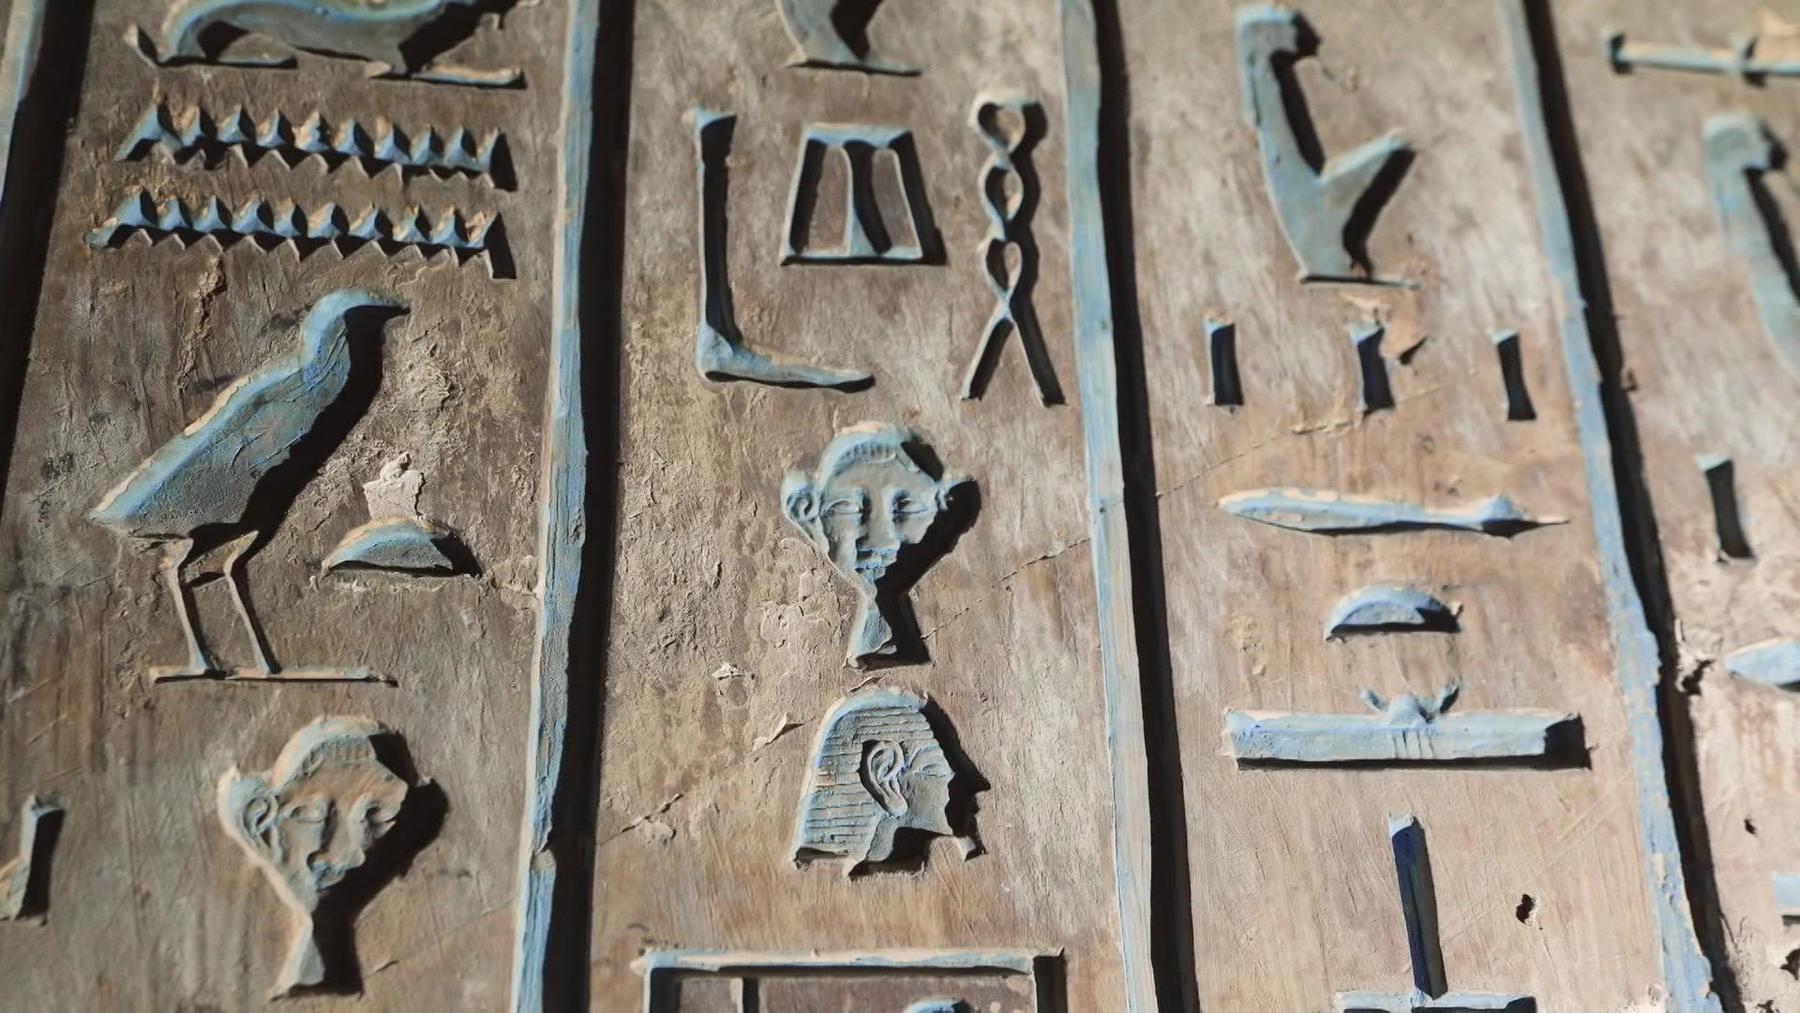 Code der Hieroglyphen